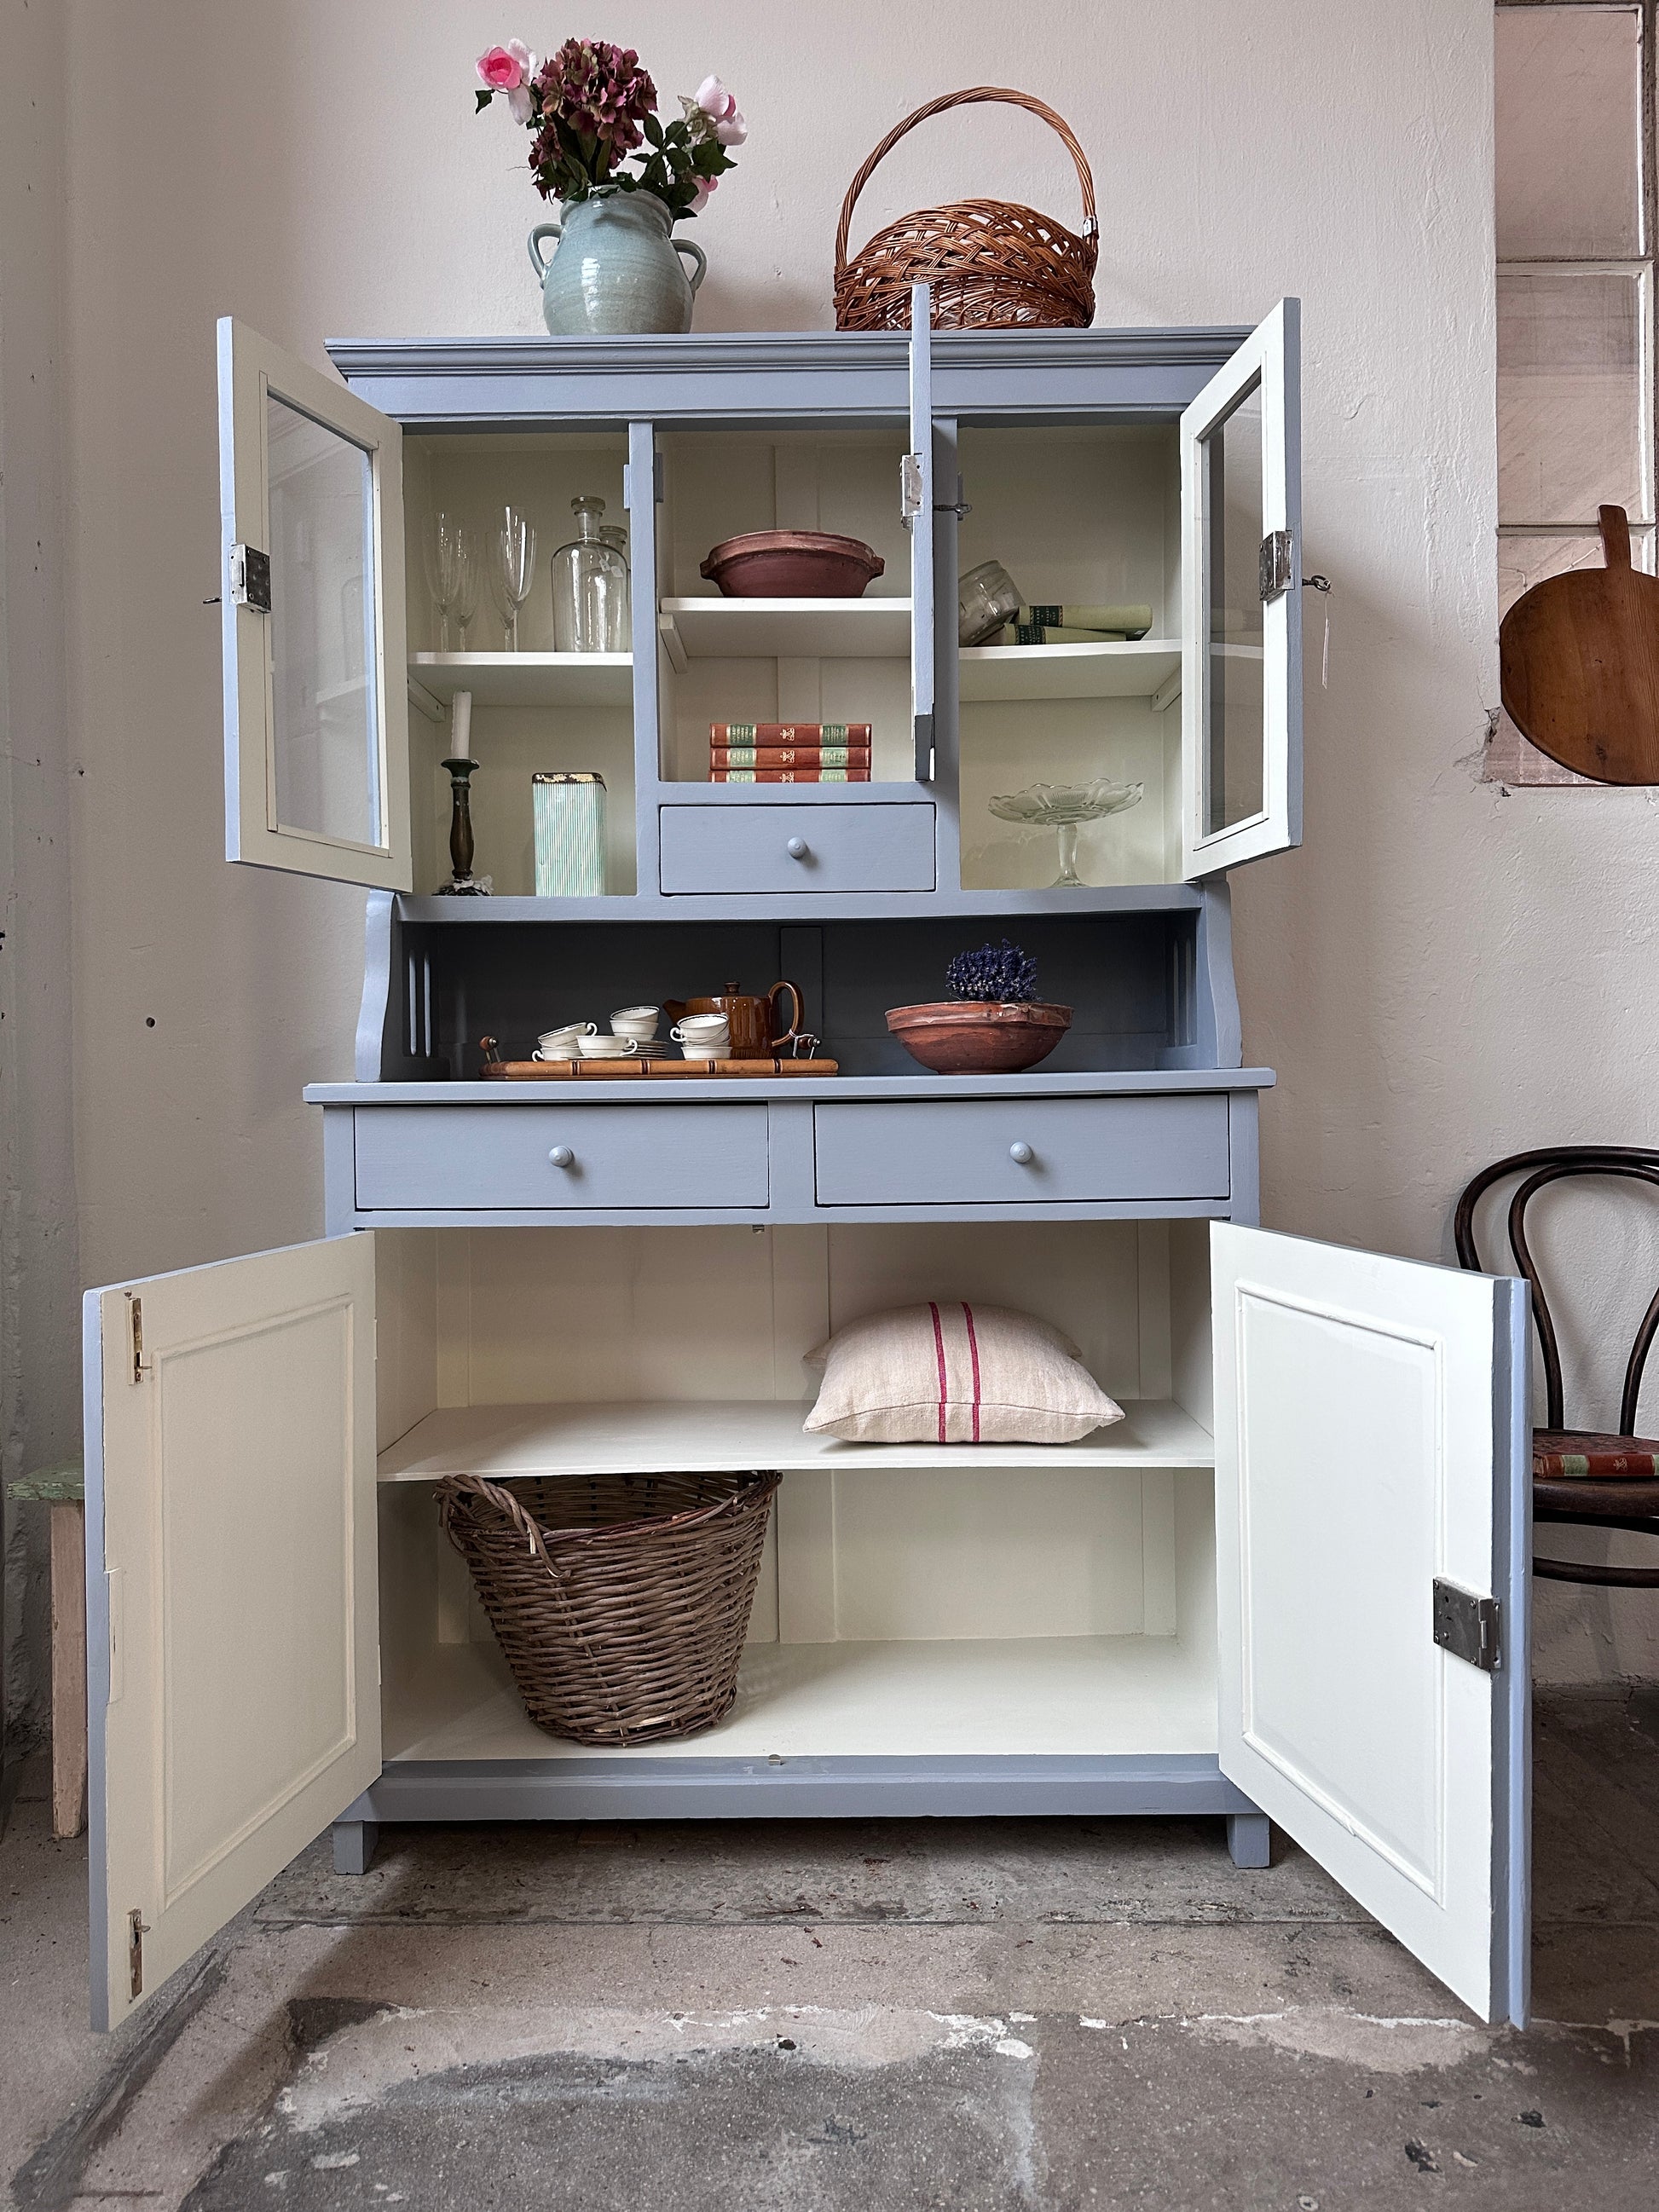 Bild visar ett gråblått köksskåp med vitrinluckor samt täckta luckor och lådor. Bild visar skåp med öppna dörrar.